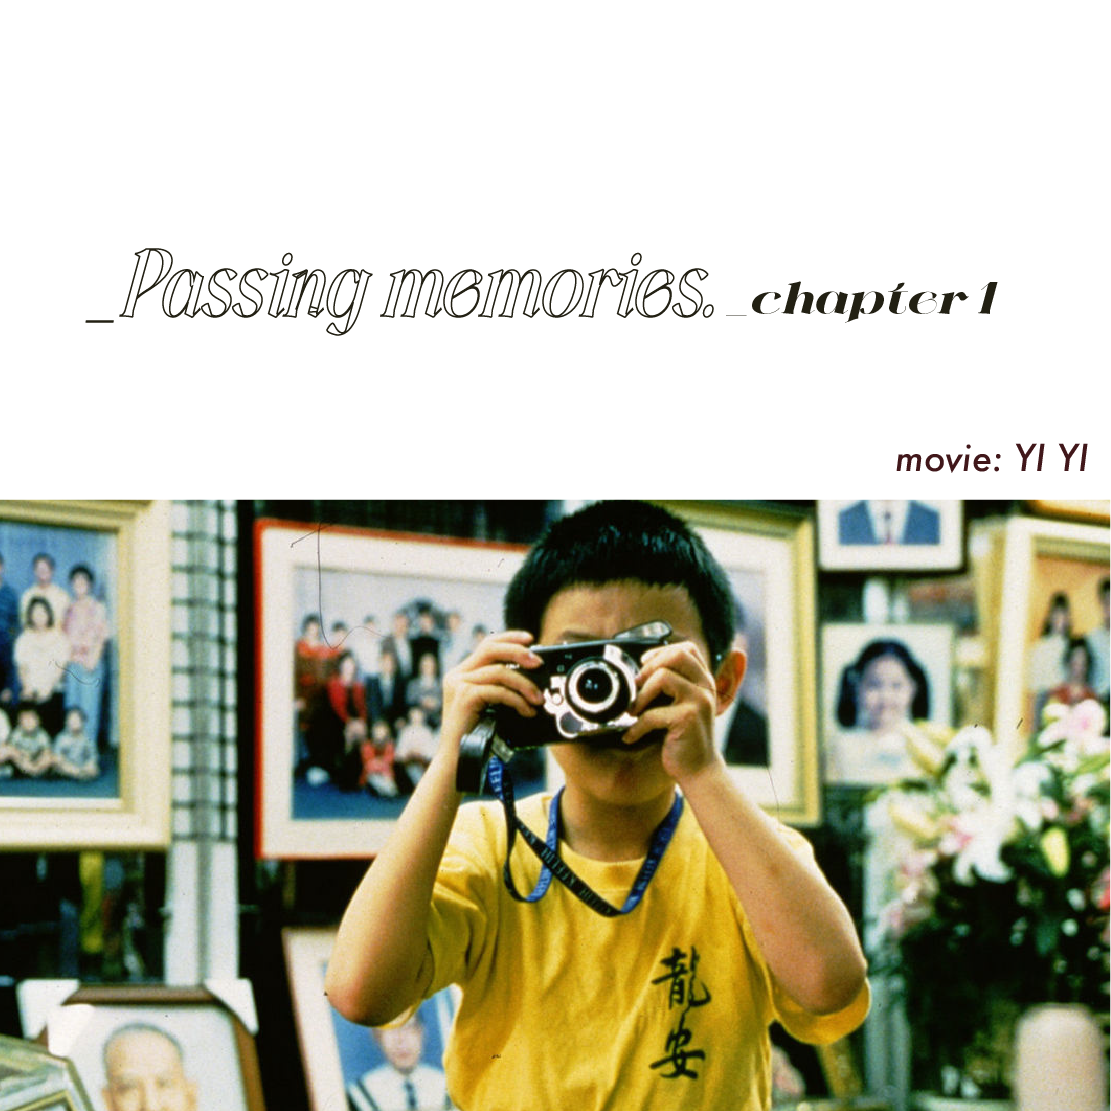 _Passing memories